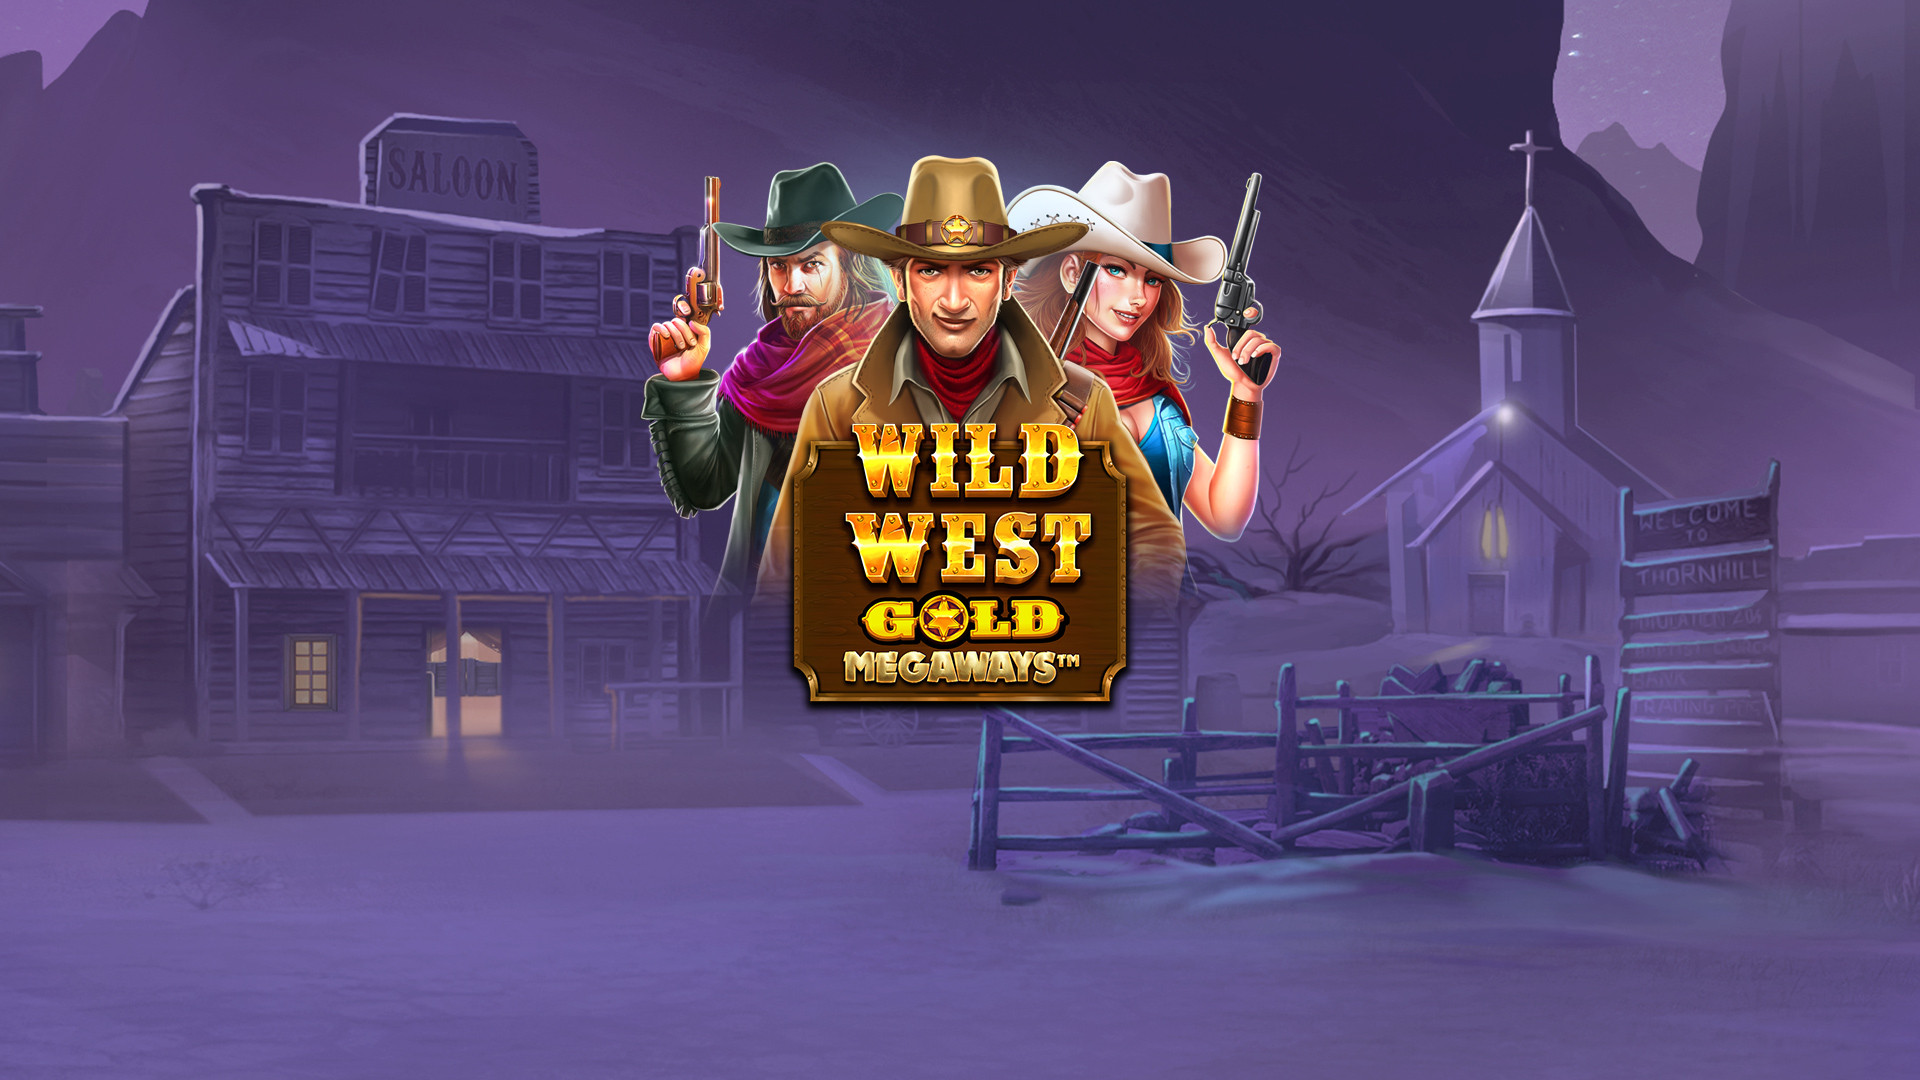 Wild West Gold MEGAWAYS